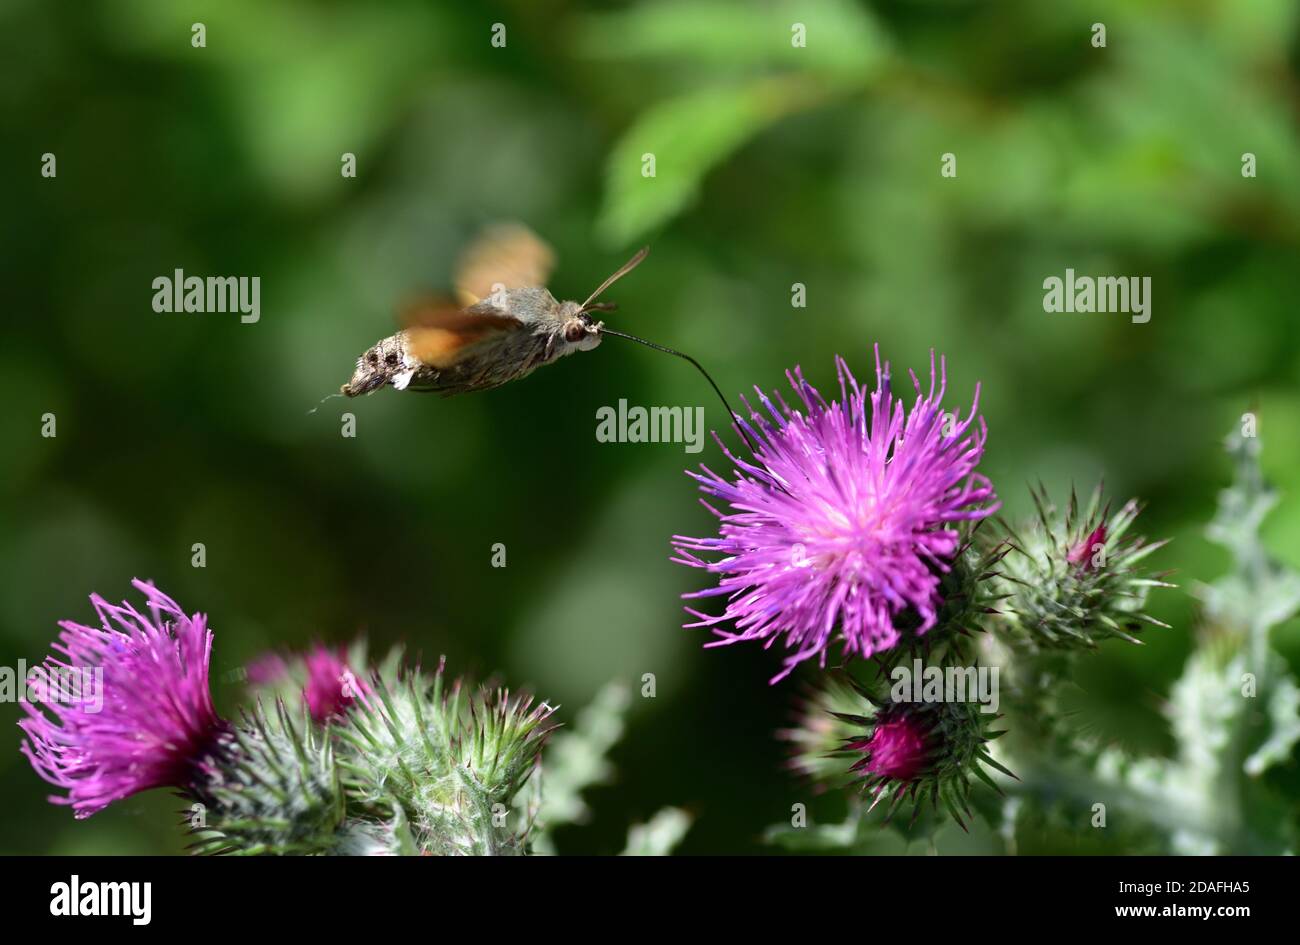 Isoliertes Exemplar der Kolibri-Falkenmotte (Macroglossum stellatarum) ernährt sich von Pollen auf den Blüten von Carduus auf natürlichem Hintergrund. Stockfoto